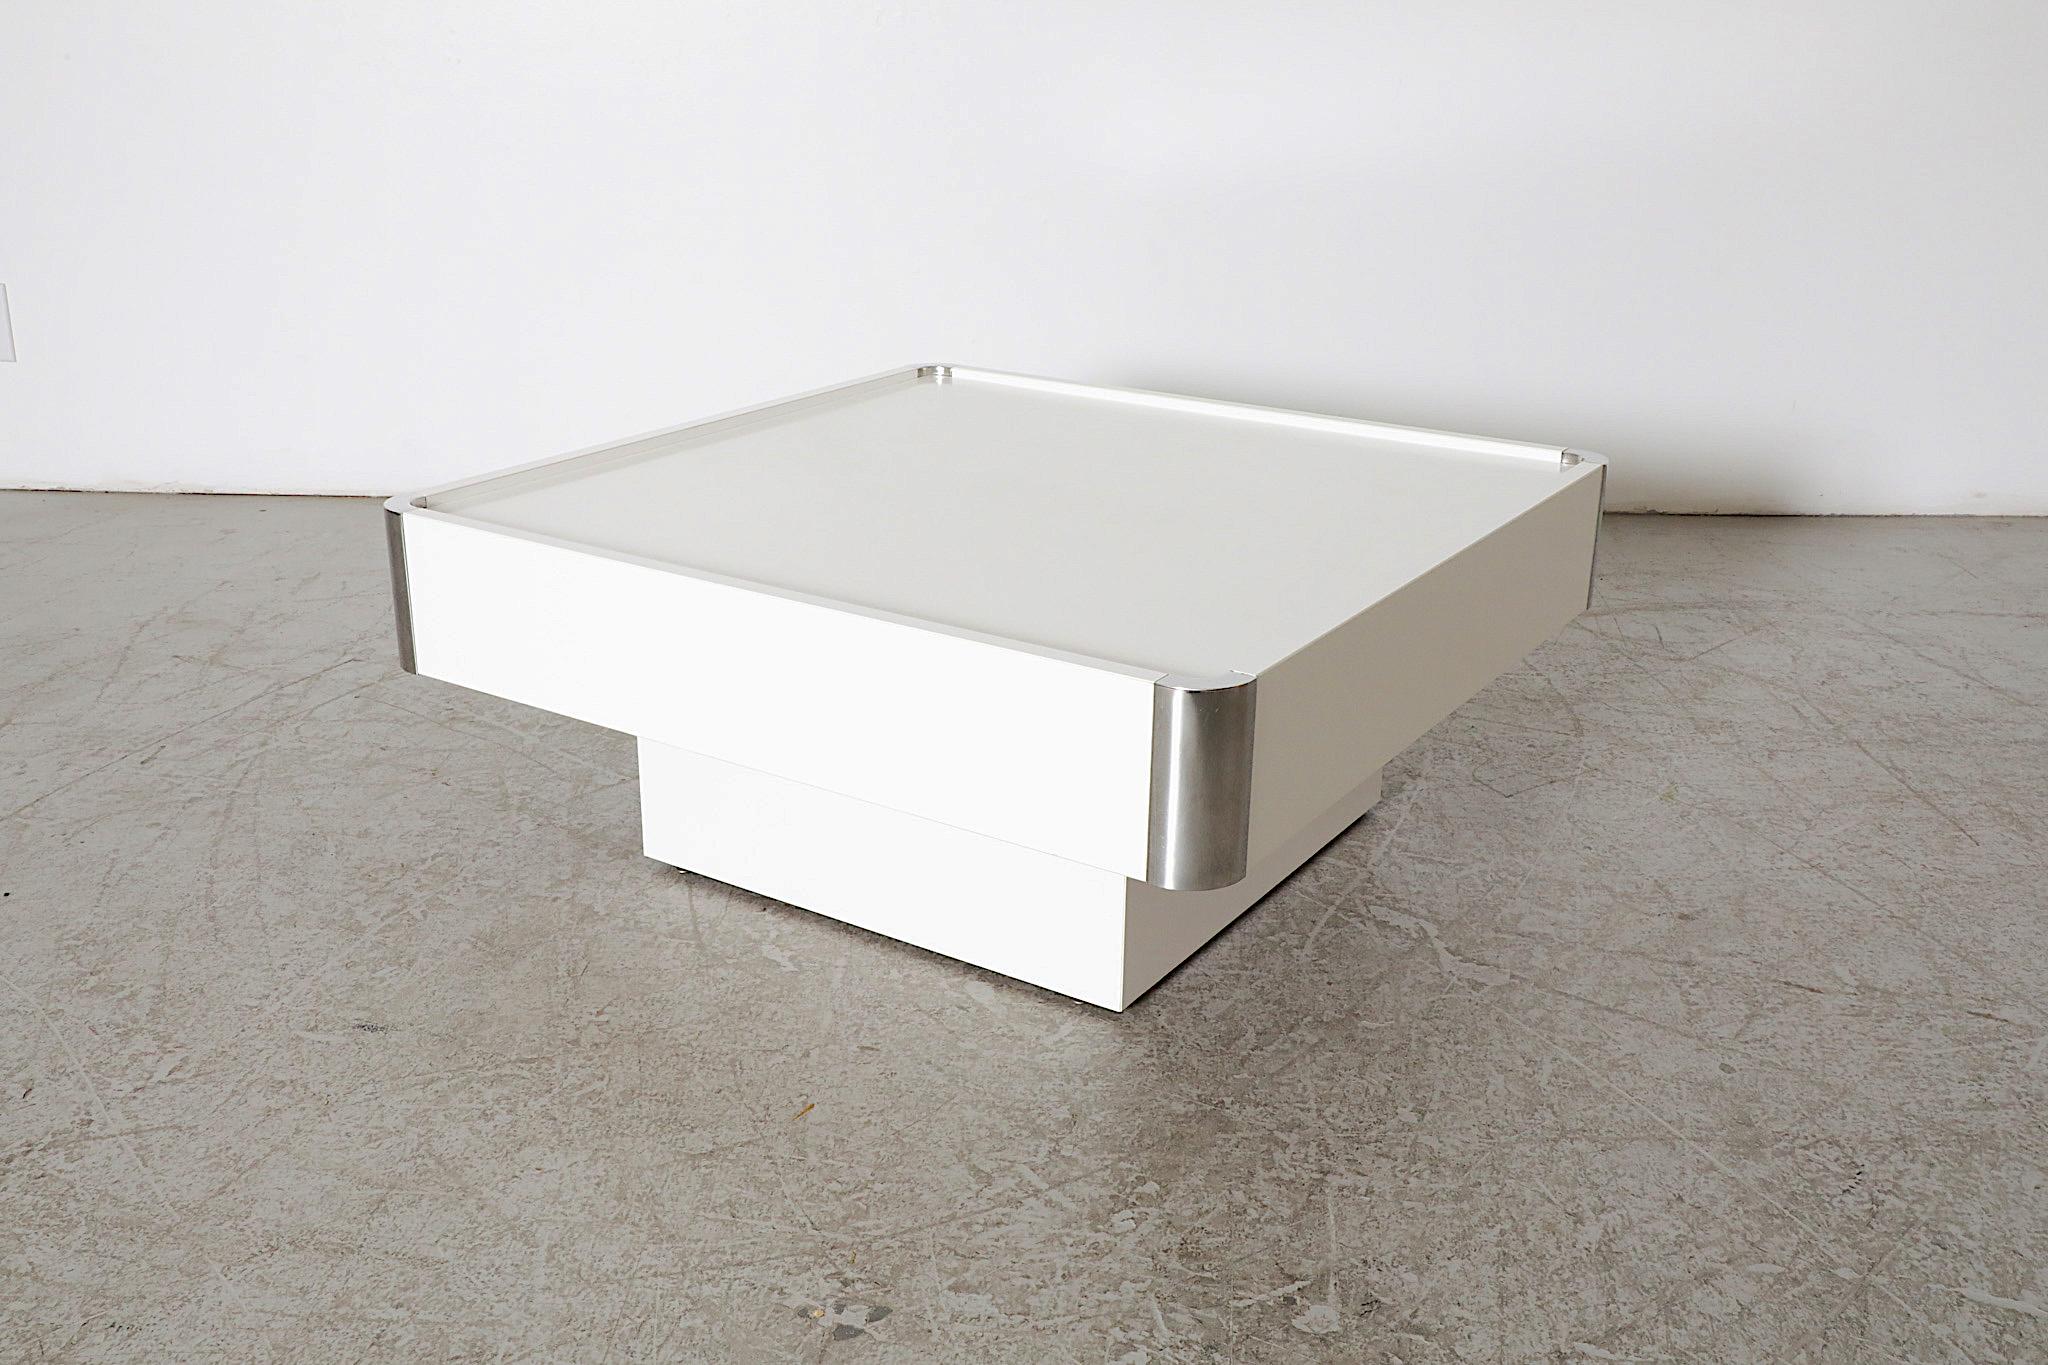 Table basse moderniste des années 1970, blanche avec coins chromés, conçue par le célèbre designer italien Willy Rizzo. Réalisé pour le Label Mario Sabot. Un exemple pur et net de design minimaliste italien. En état d'origine avec une usure visible,